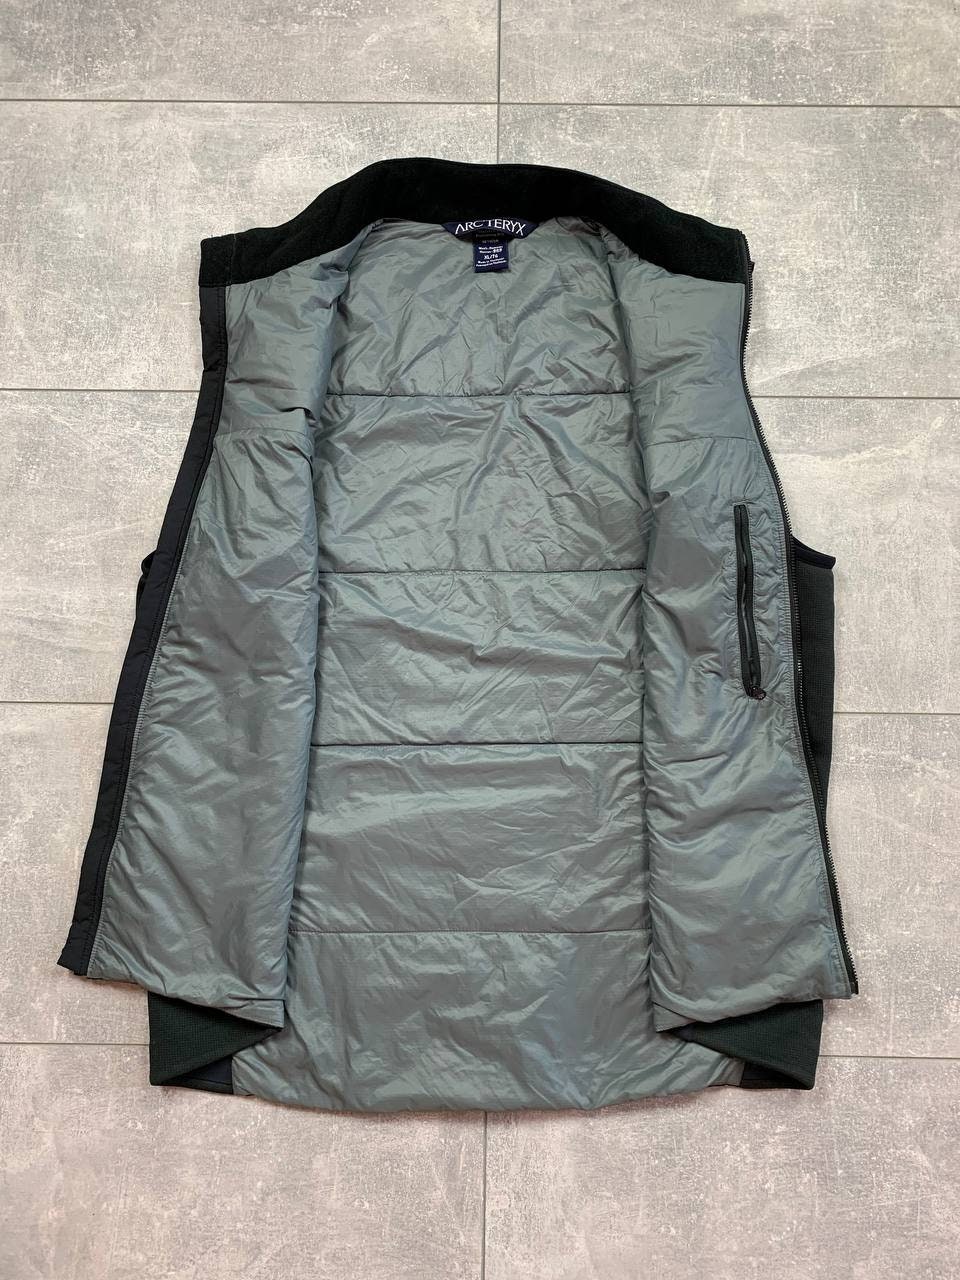 Arcteryx down jacket puffer vest | Etsy